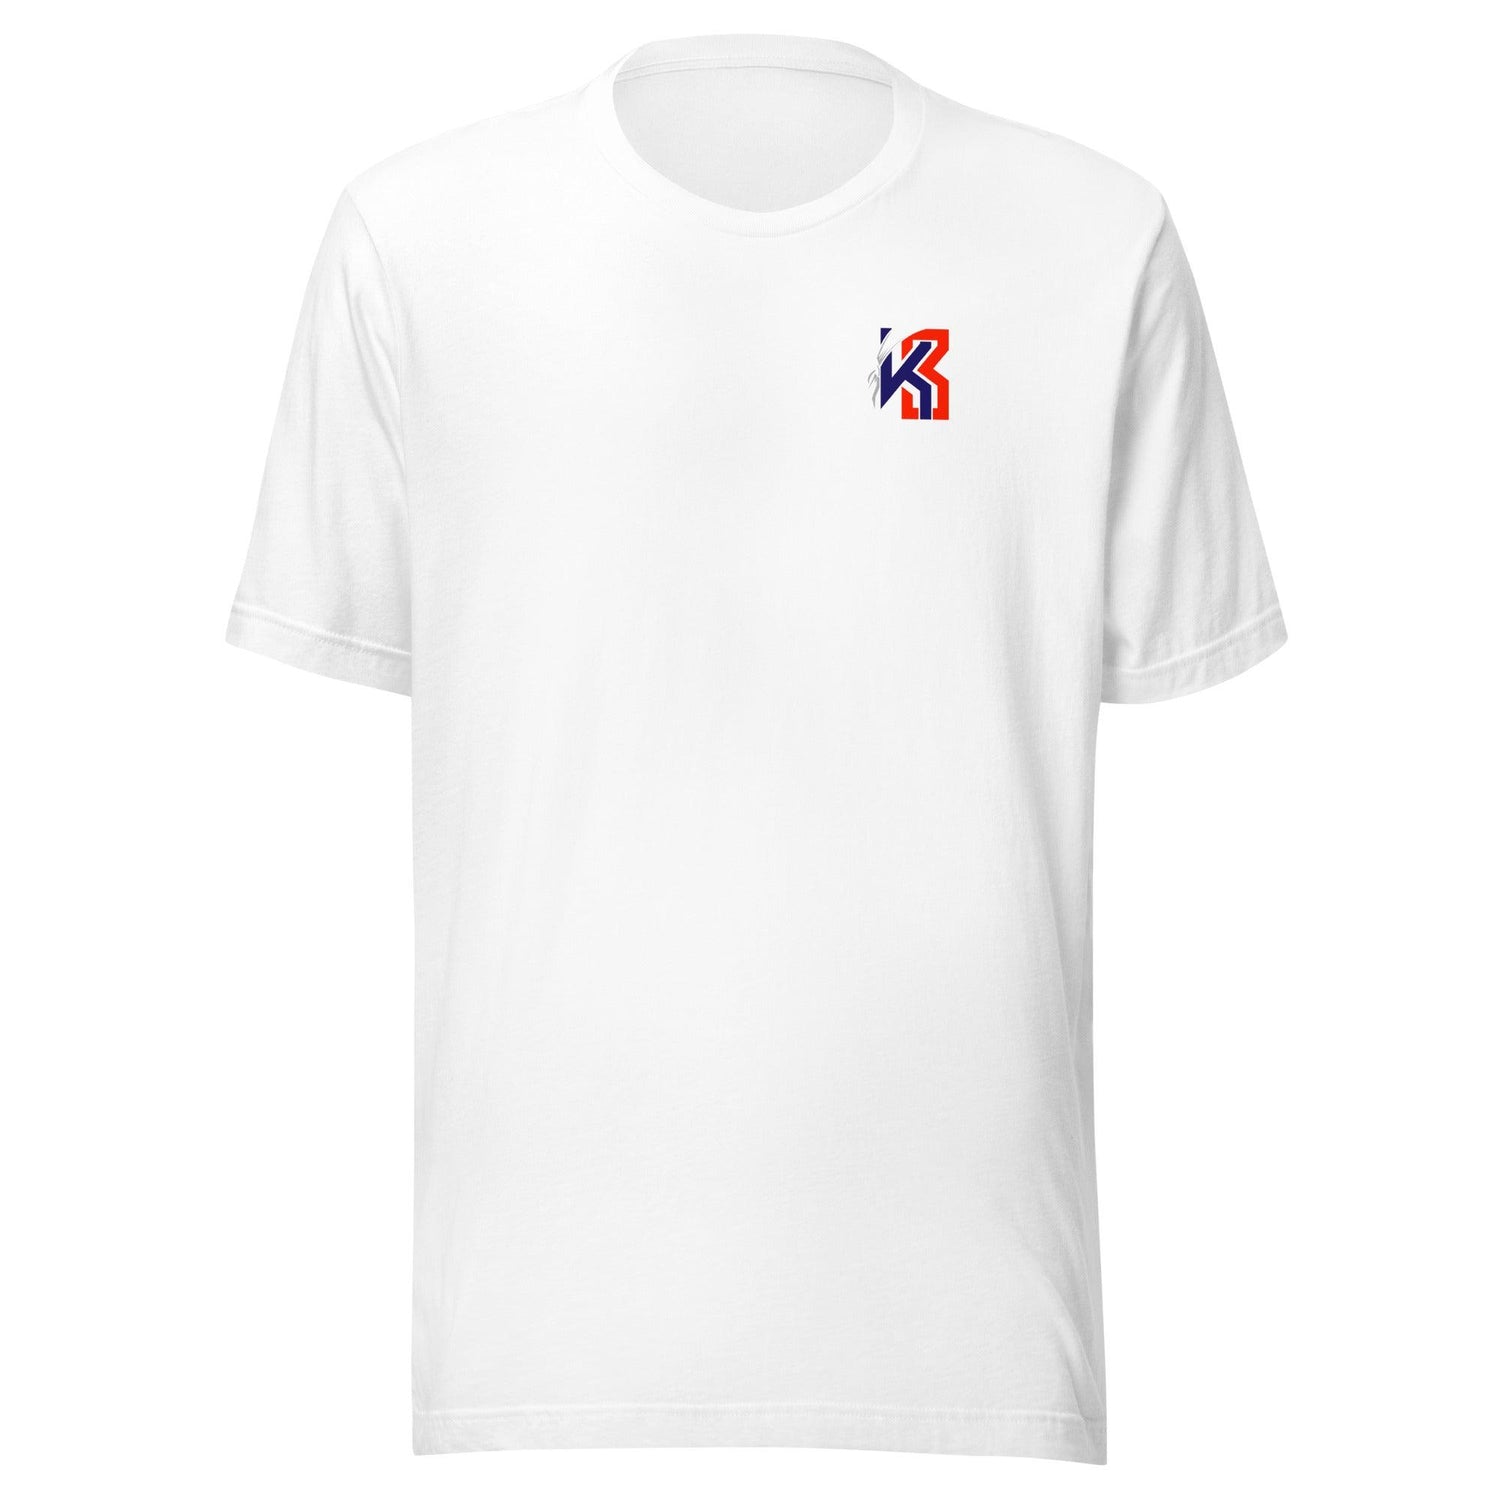 Kenny Bednarek "Track Life" t-shirt - Fan Arch